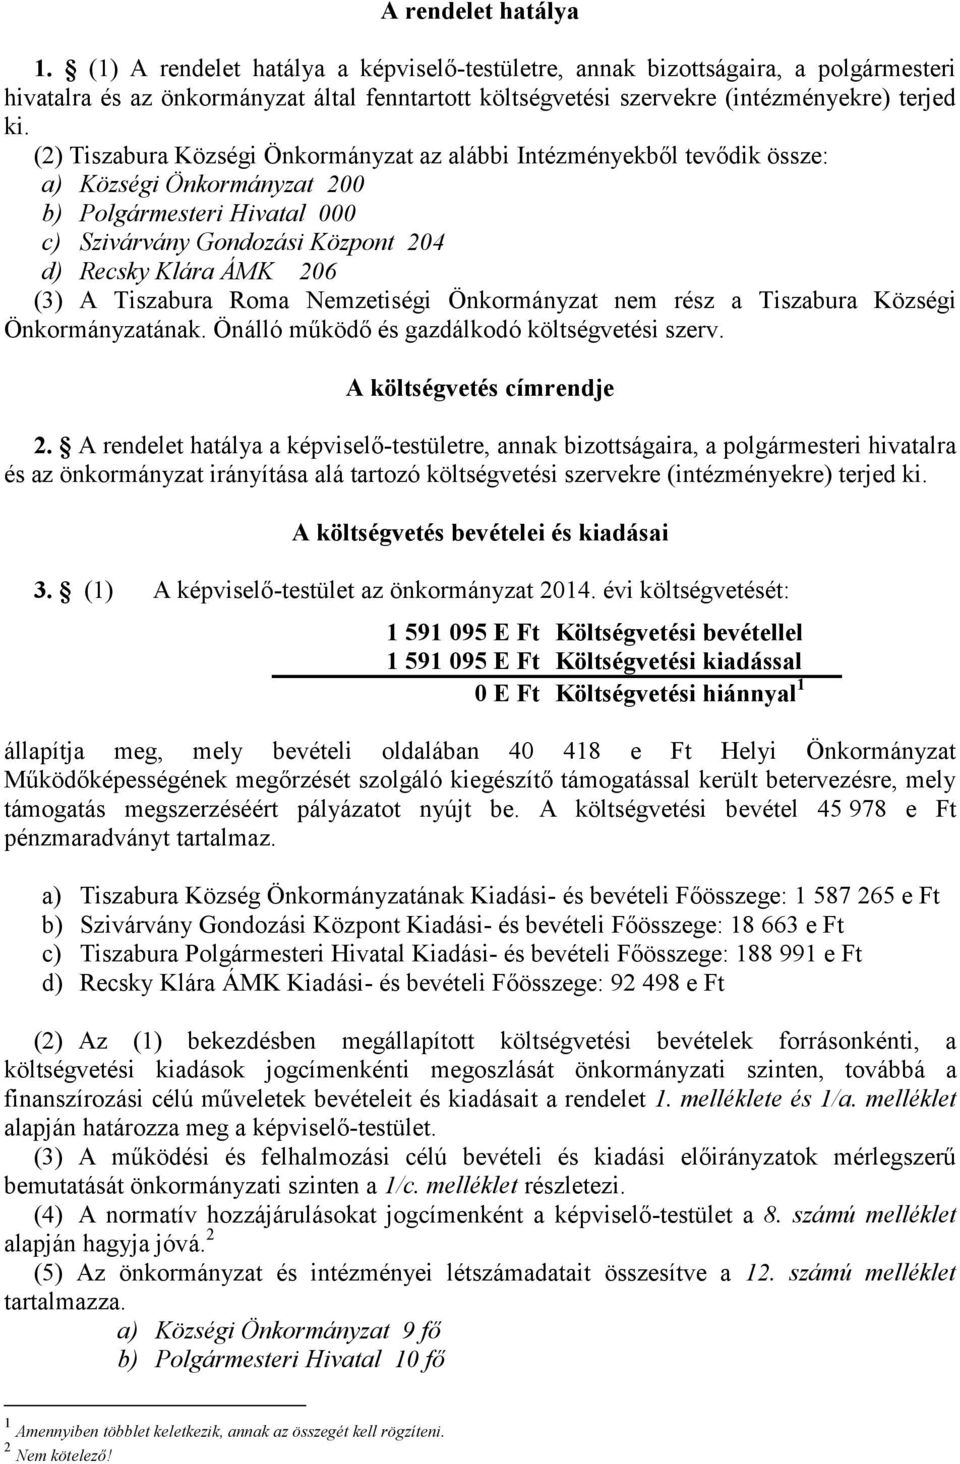 (2) Tiszabura Községi Önkormányzat az alábbi Intézményekből tevődik össze: a) Községi Önkormányzat 200 b) Polgármesteri Hivatal 000 c) Szivárvány Gondozási Központ 204 d) Recsky Klára ÁMK 206 (3) A